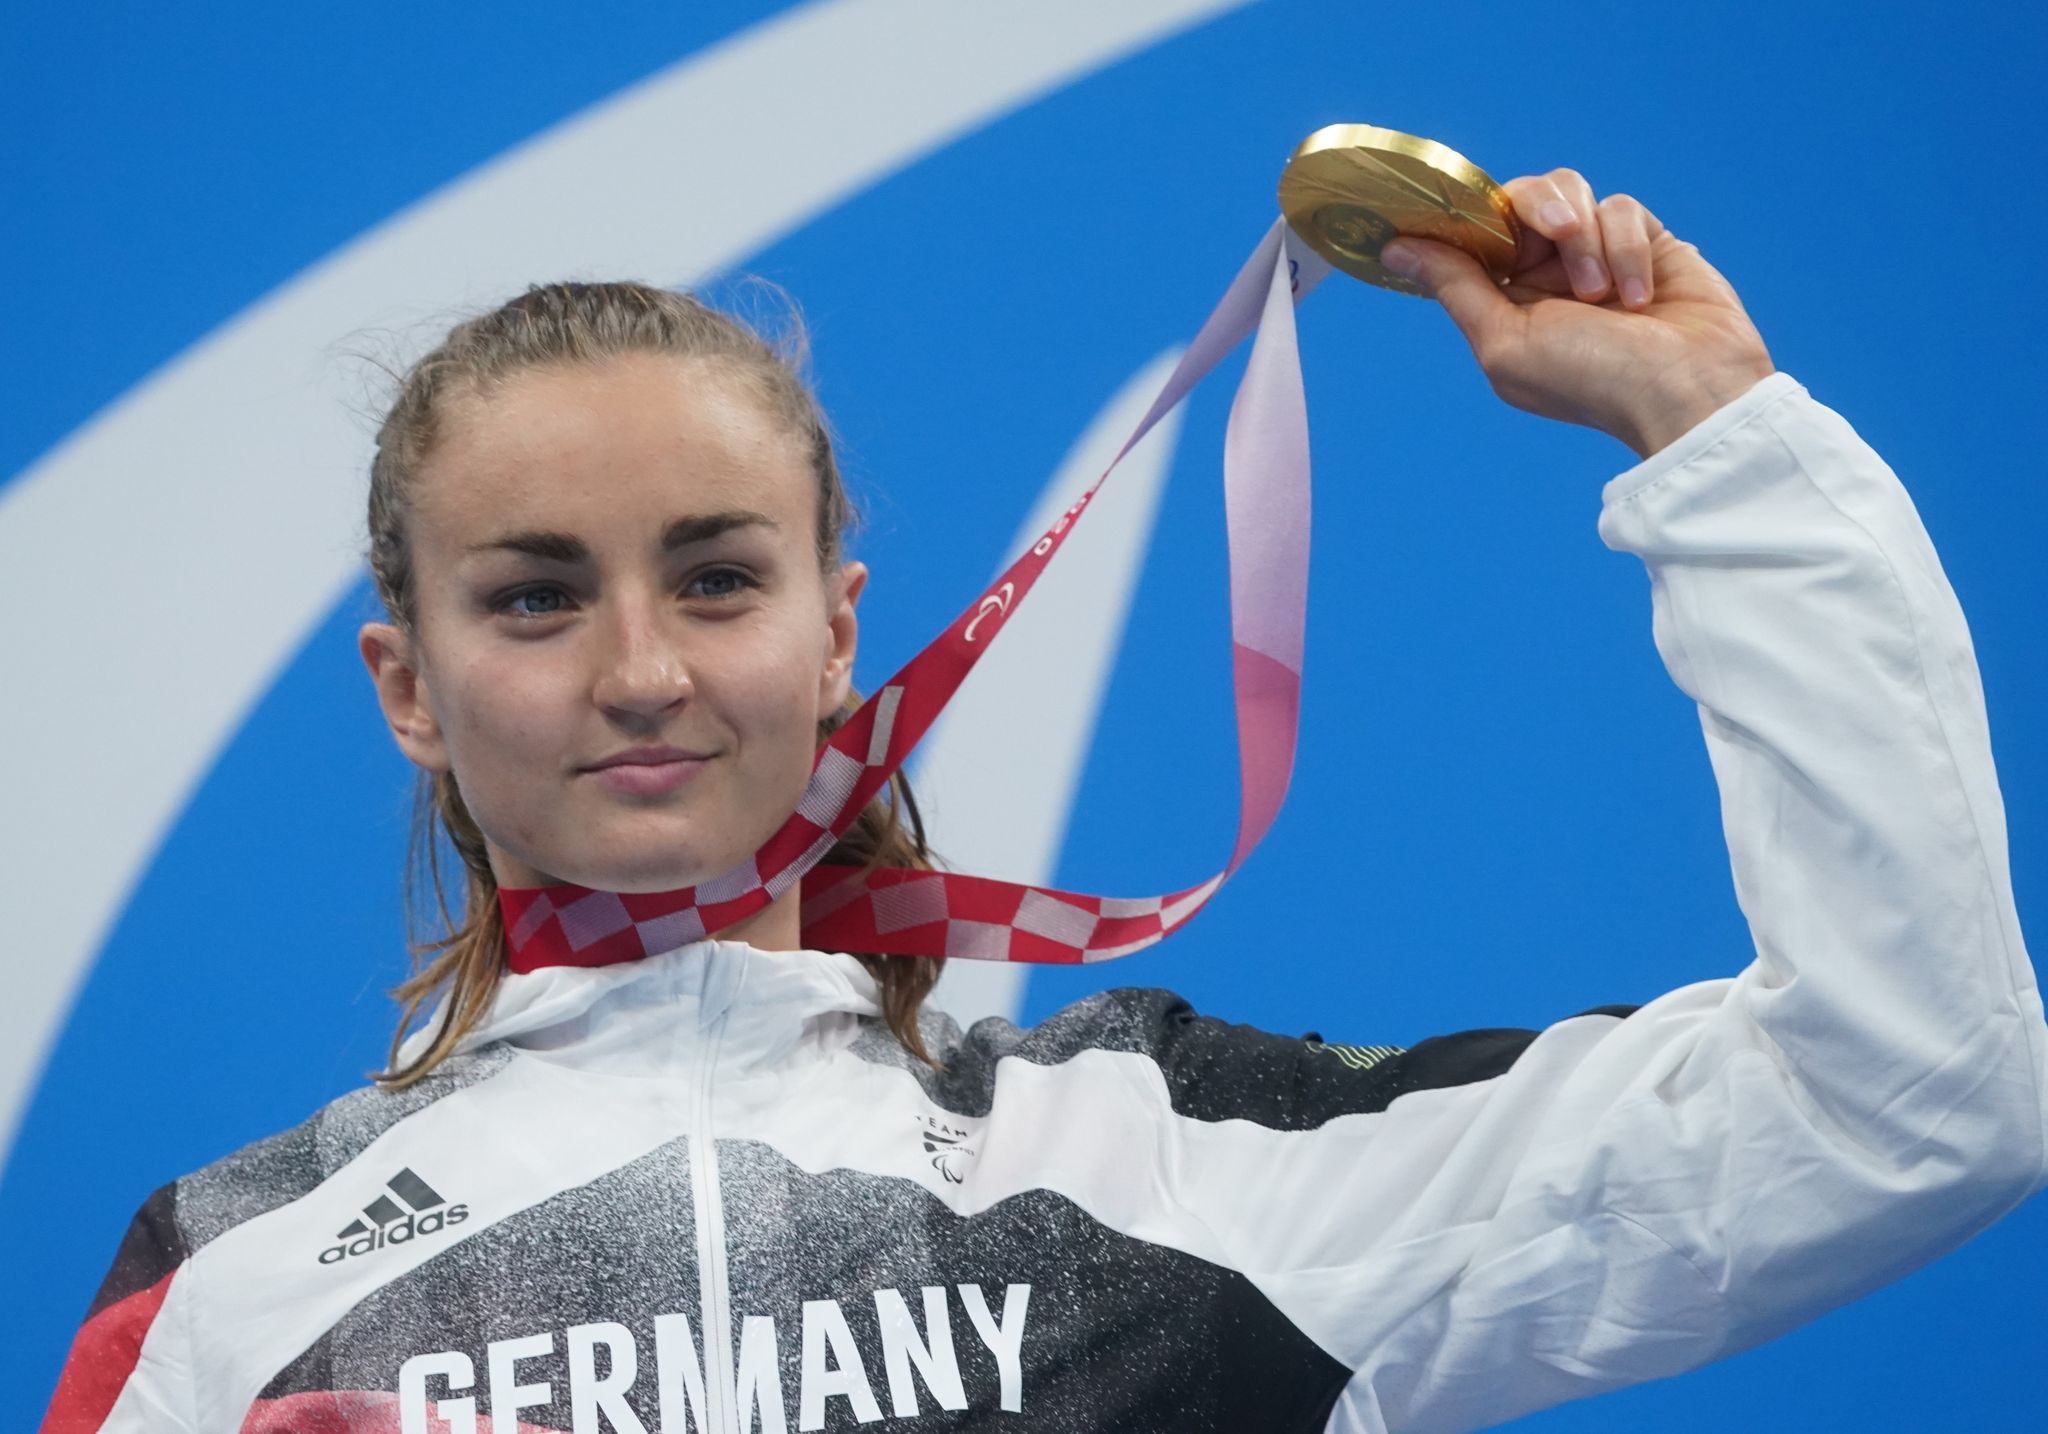 Elena Semechin erreichte trotz laufender Chemotherapie den 2. Platz der Para-Schwimm-WM.